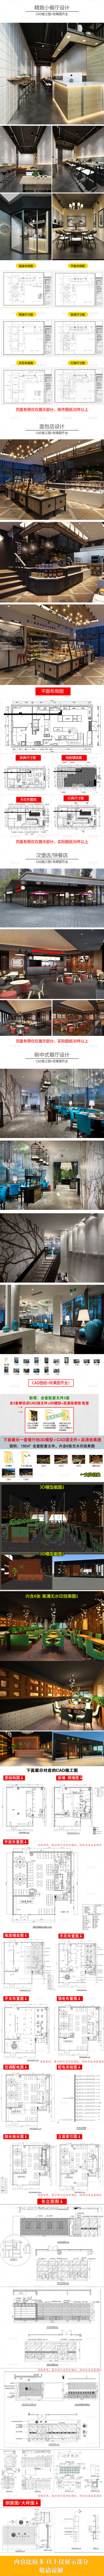 1100套餐饮空间CAD施工图 3D效果图平面西餐中式茶餐厅快餐饭店食堂素材 设计素材 第3张